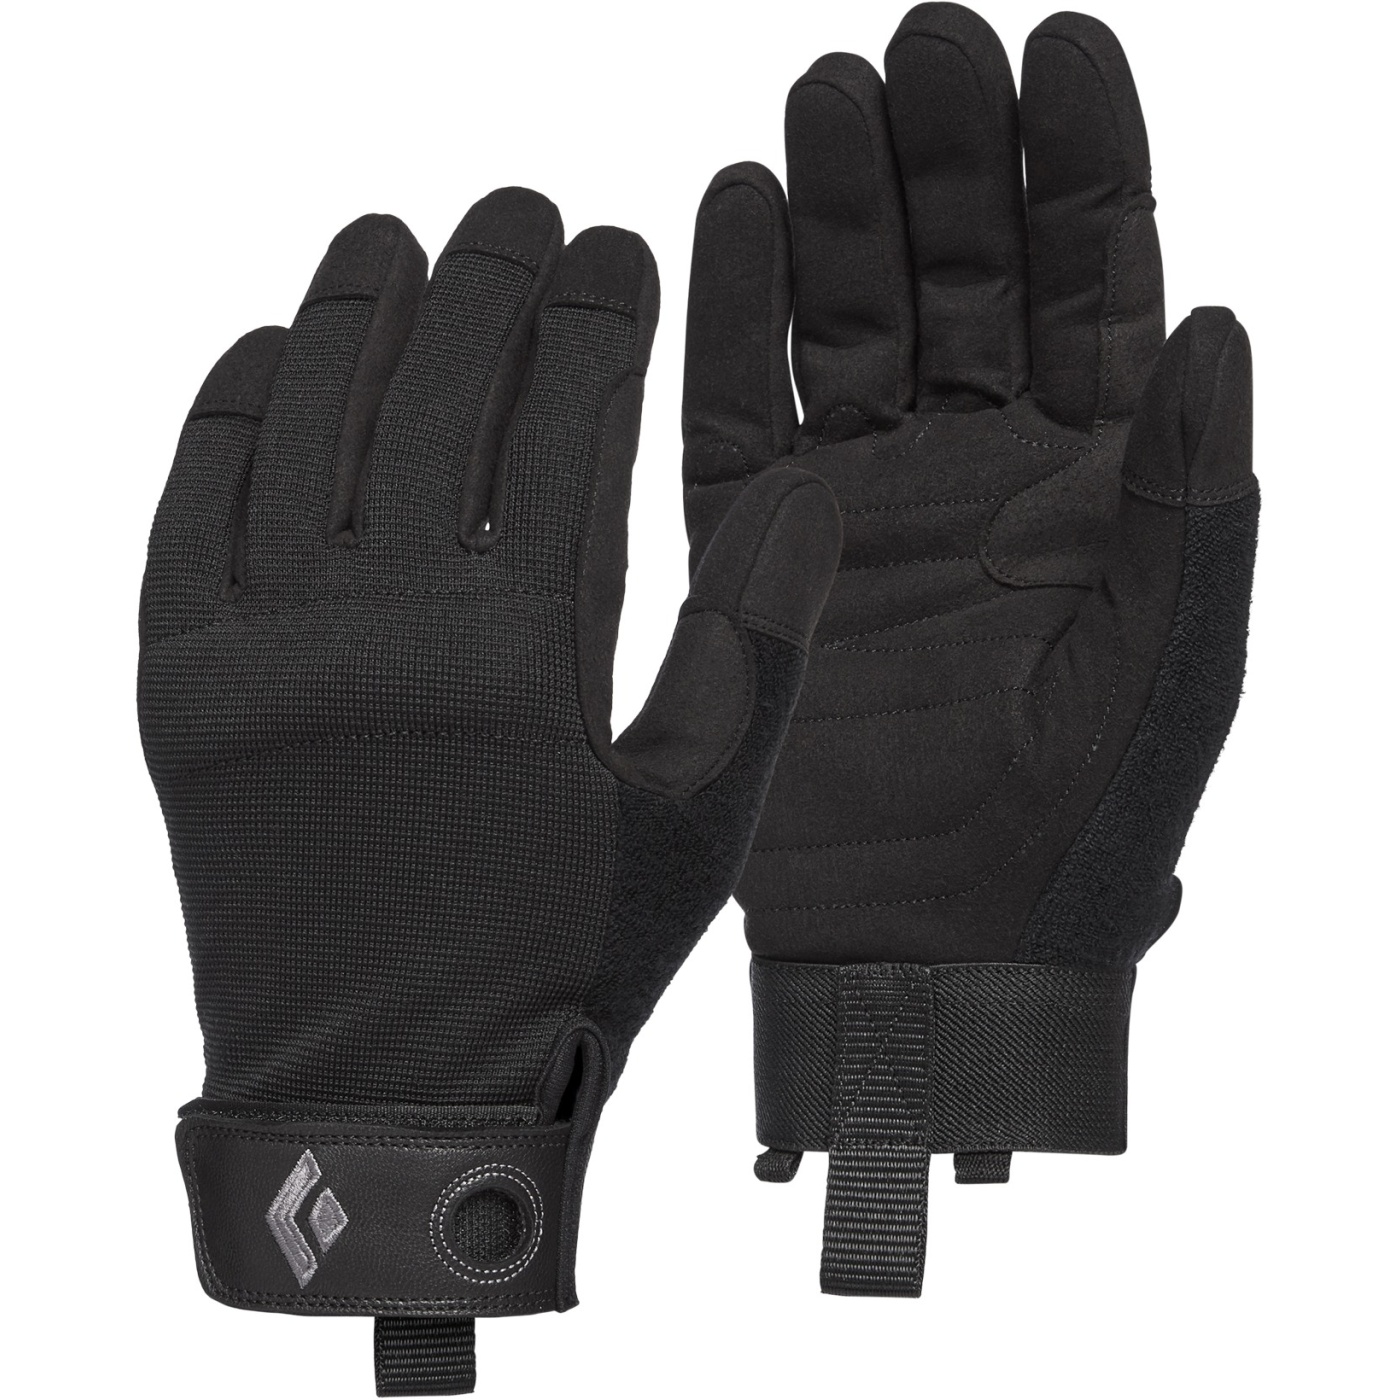 Produktbild von Black Diamond Crag Gloves Kletterhandschuhe - Black